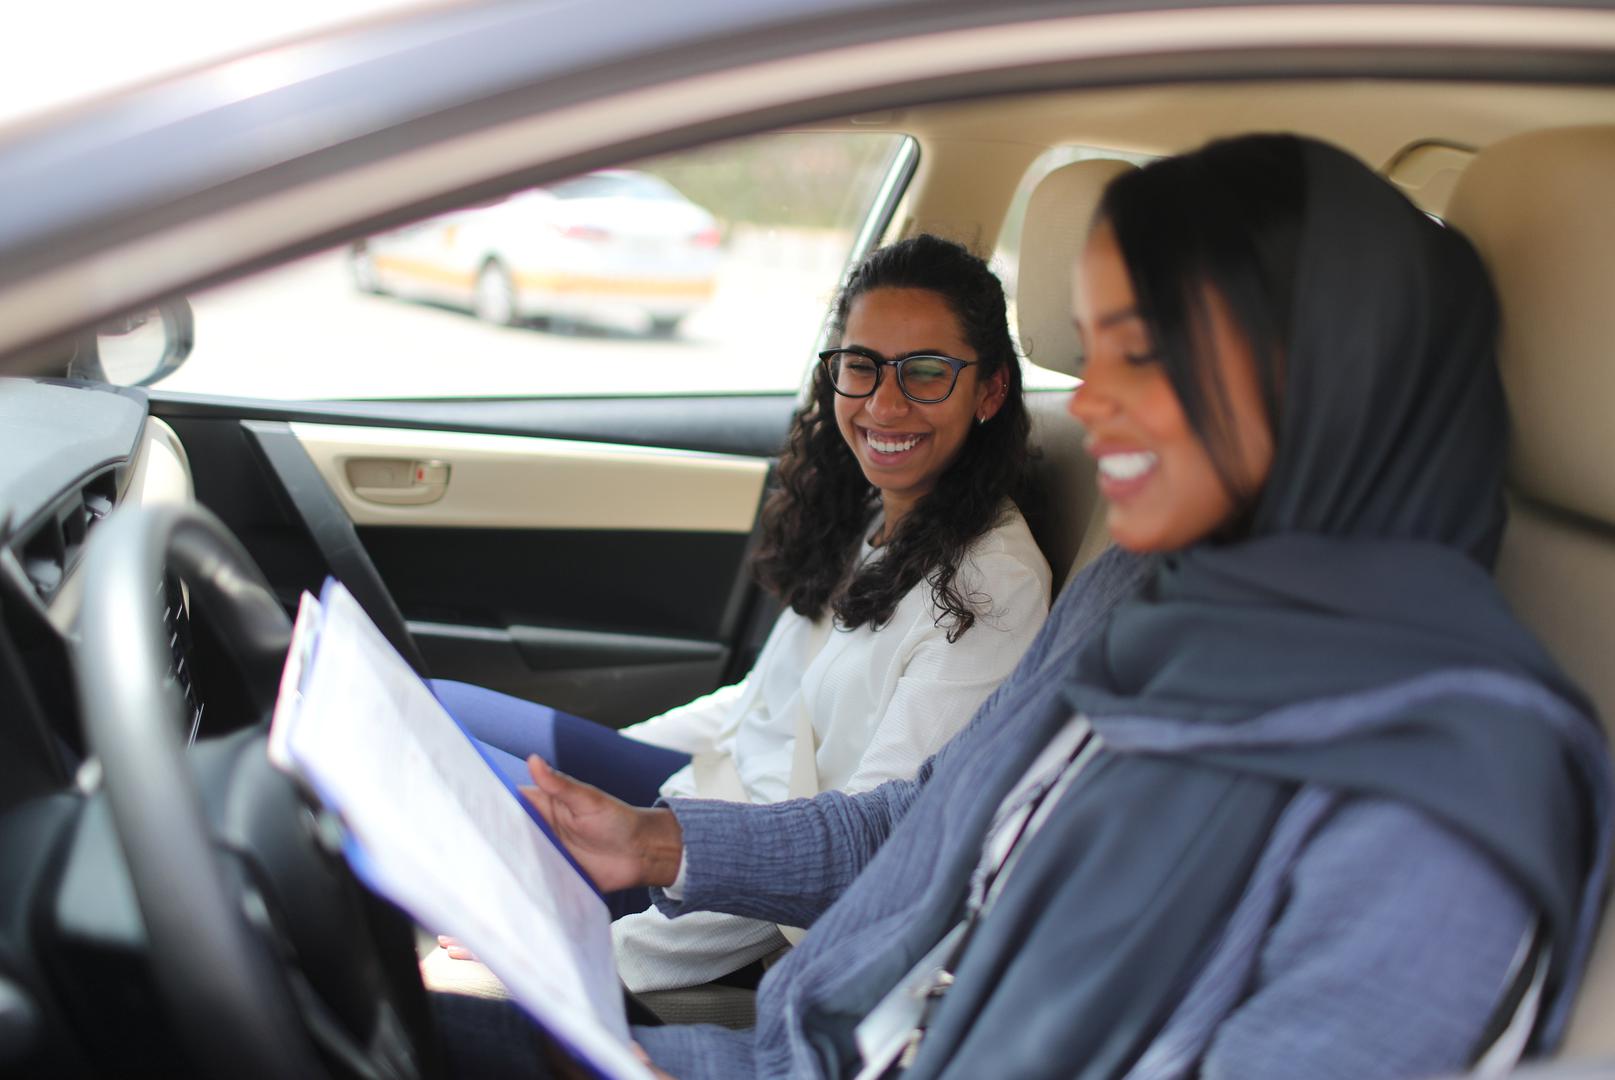 Saudija Arabija nestrpljivo iščekuje 24. lipnja, dan kad će i žene smjeti voziti automobile